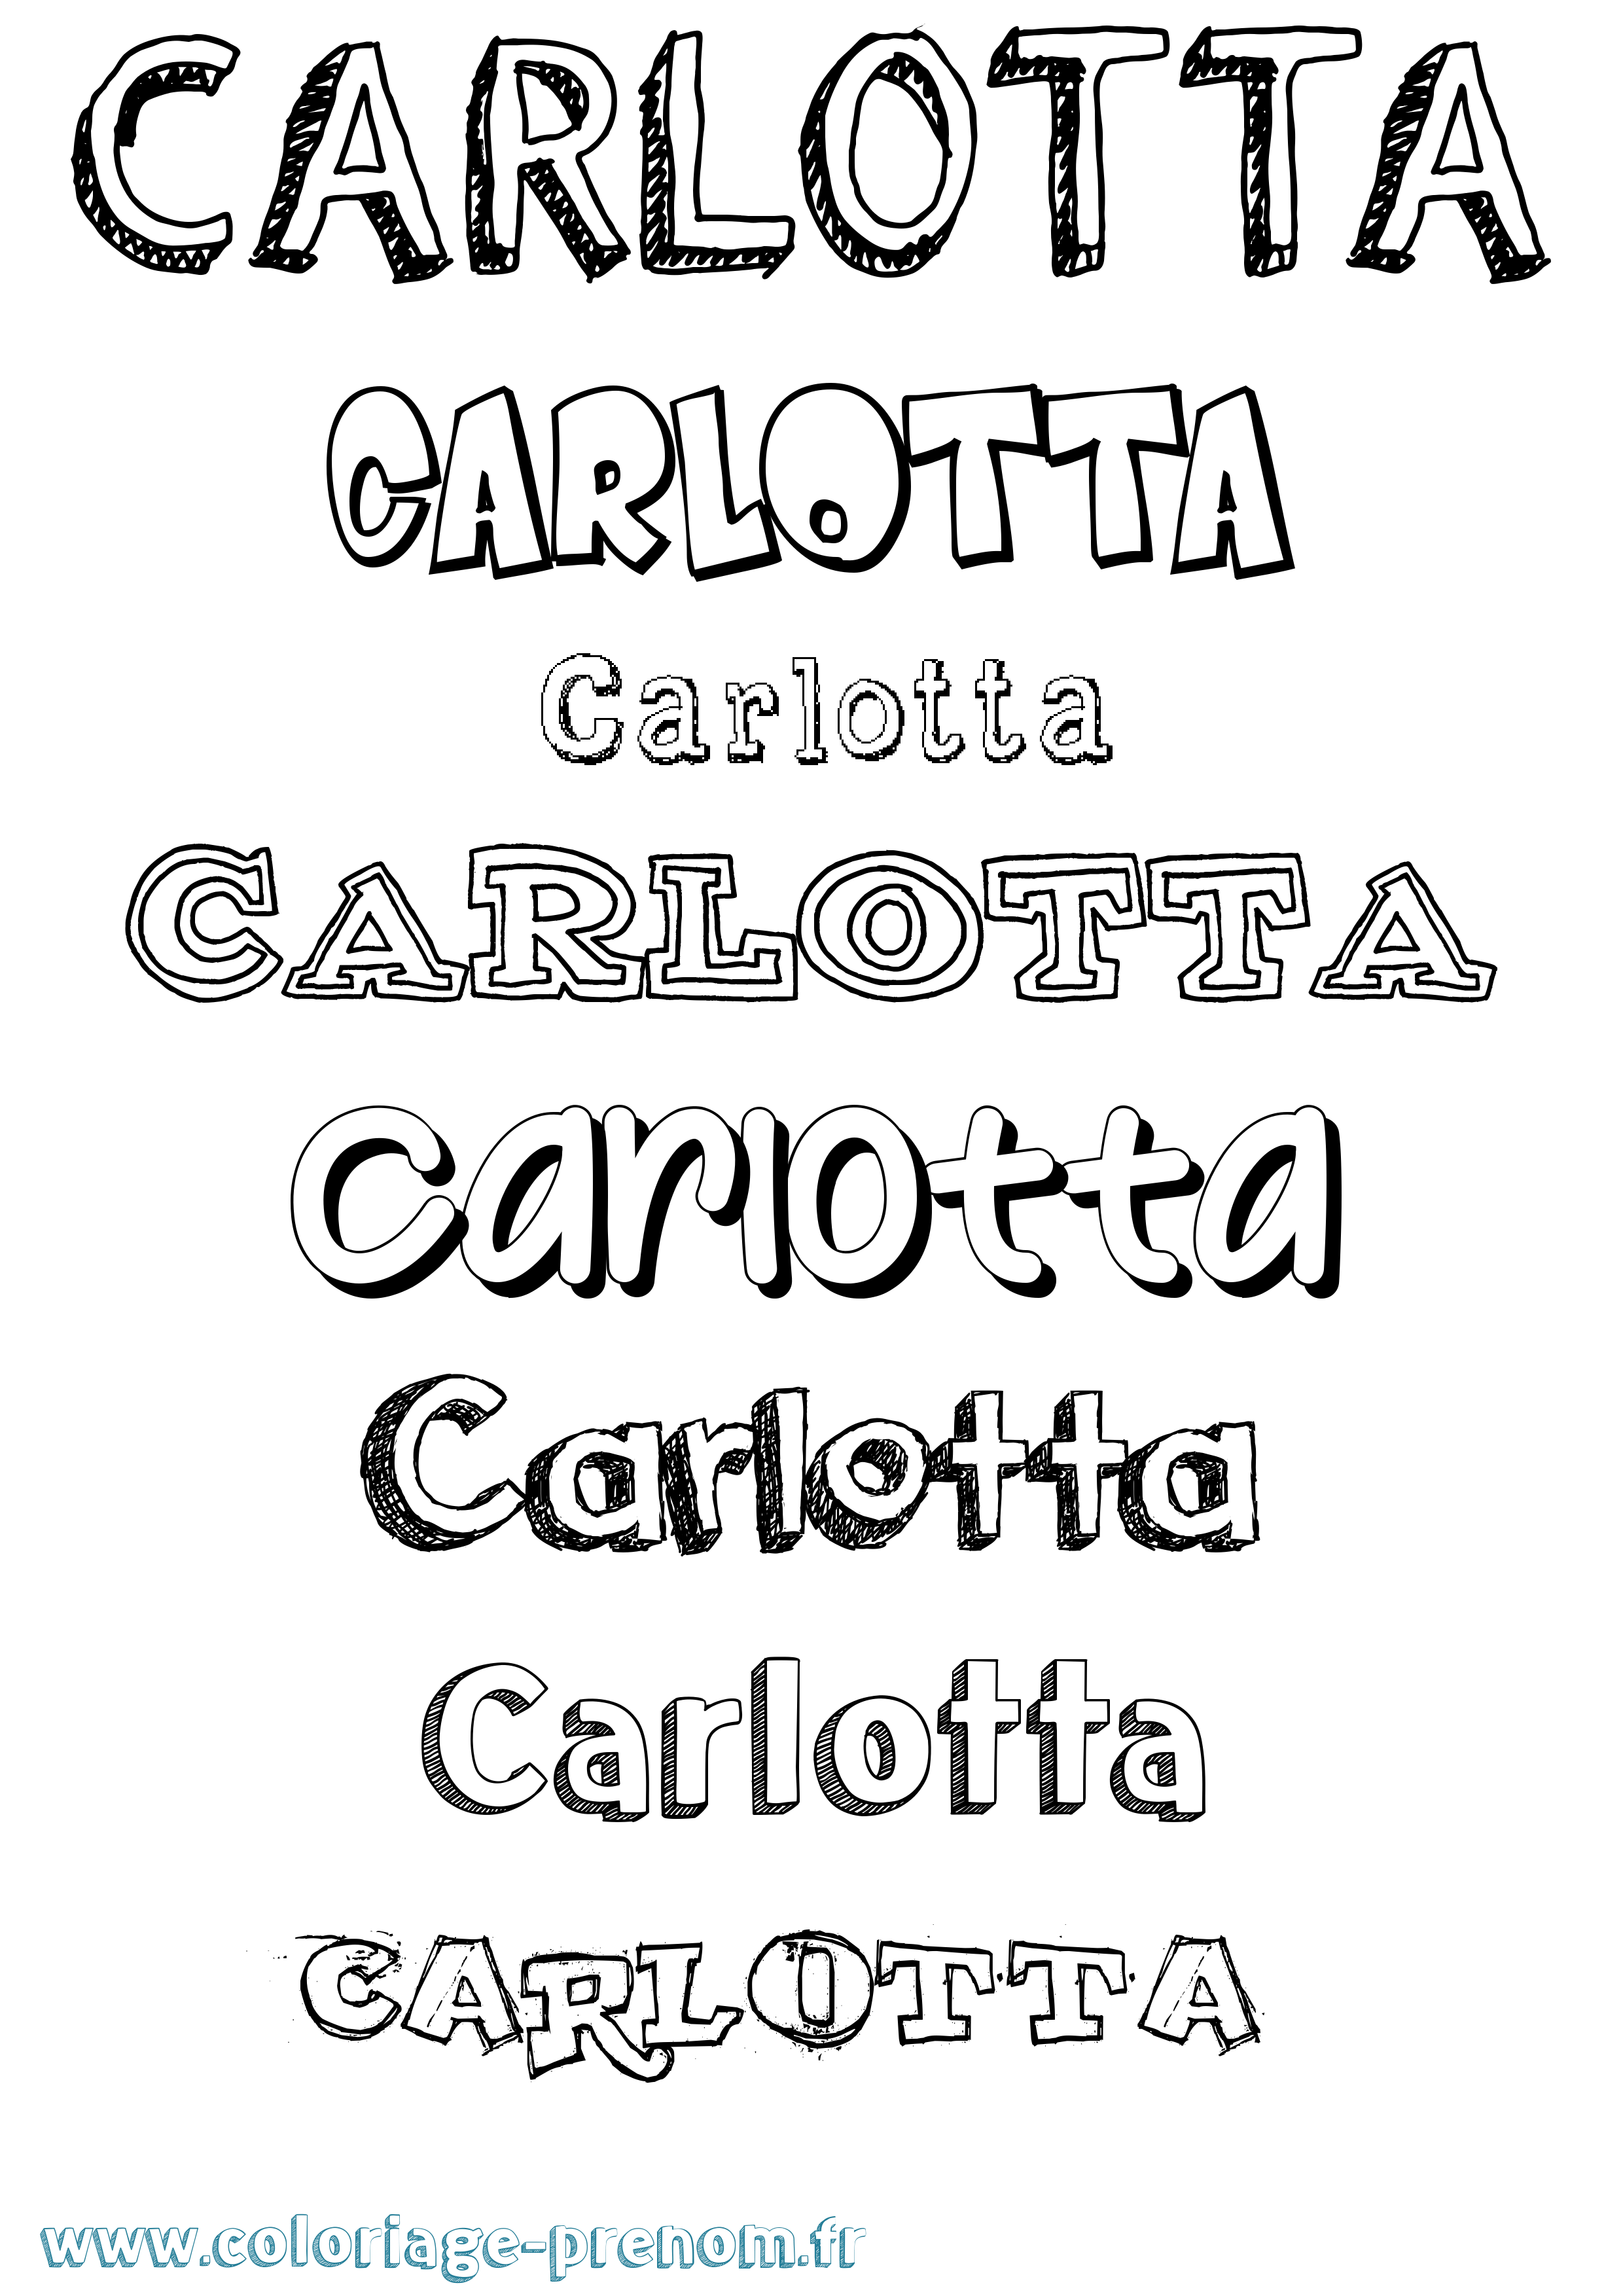 Coloriage prénom Carlotta